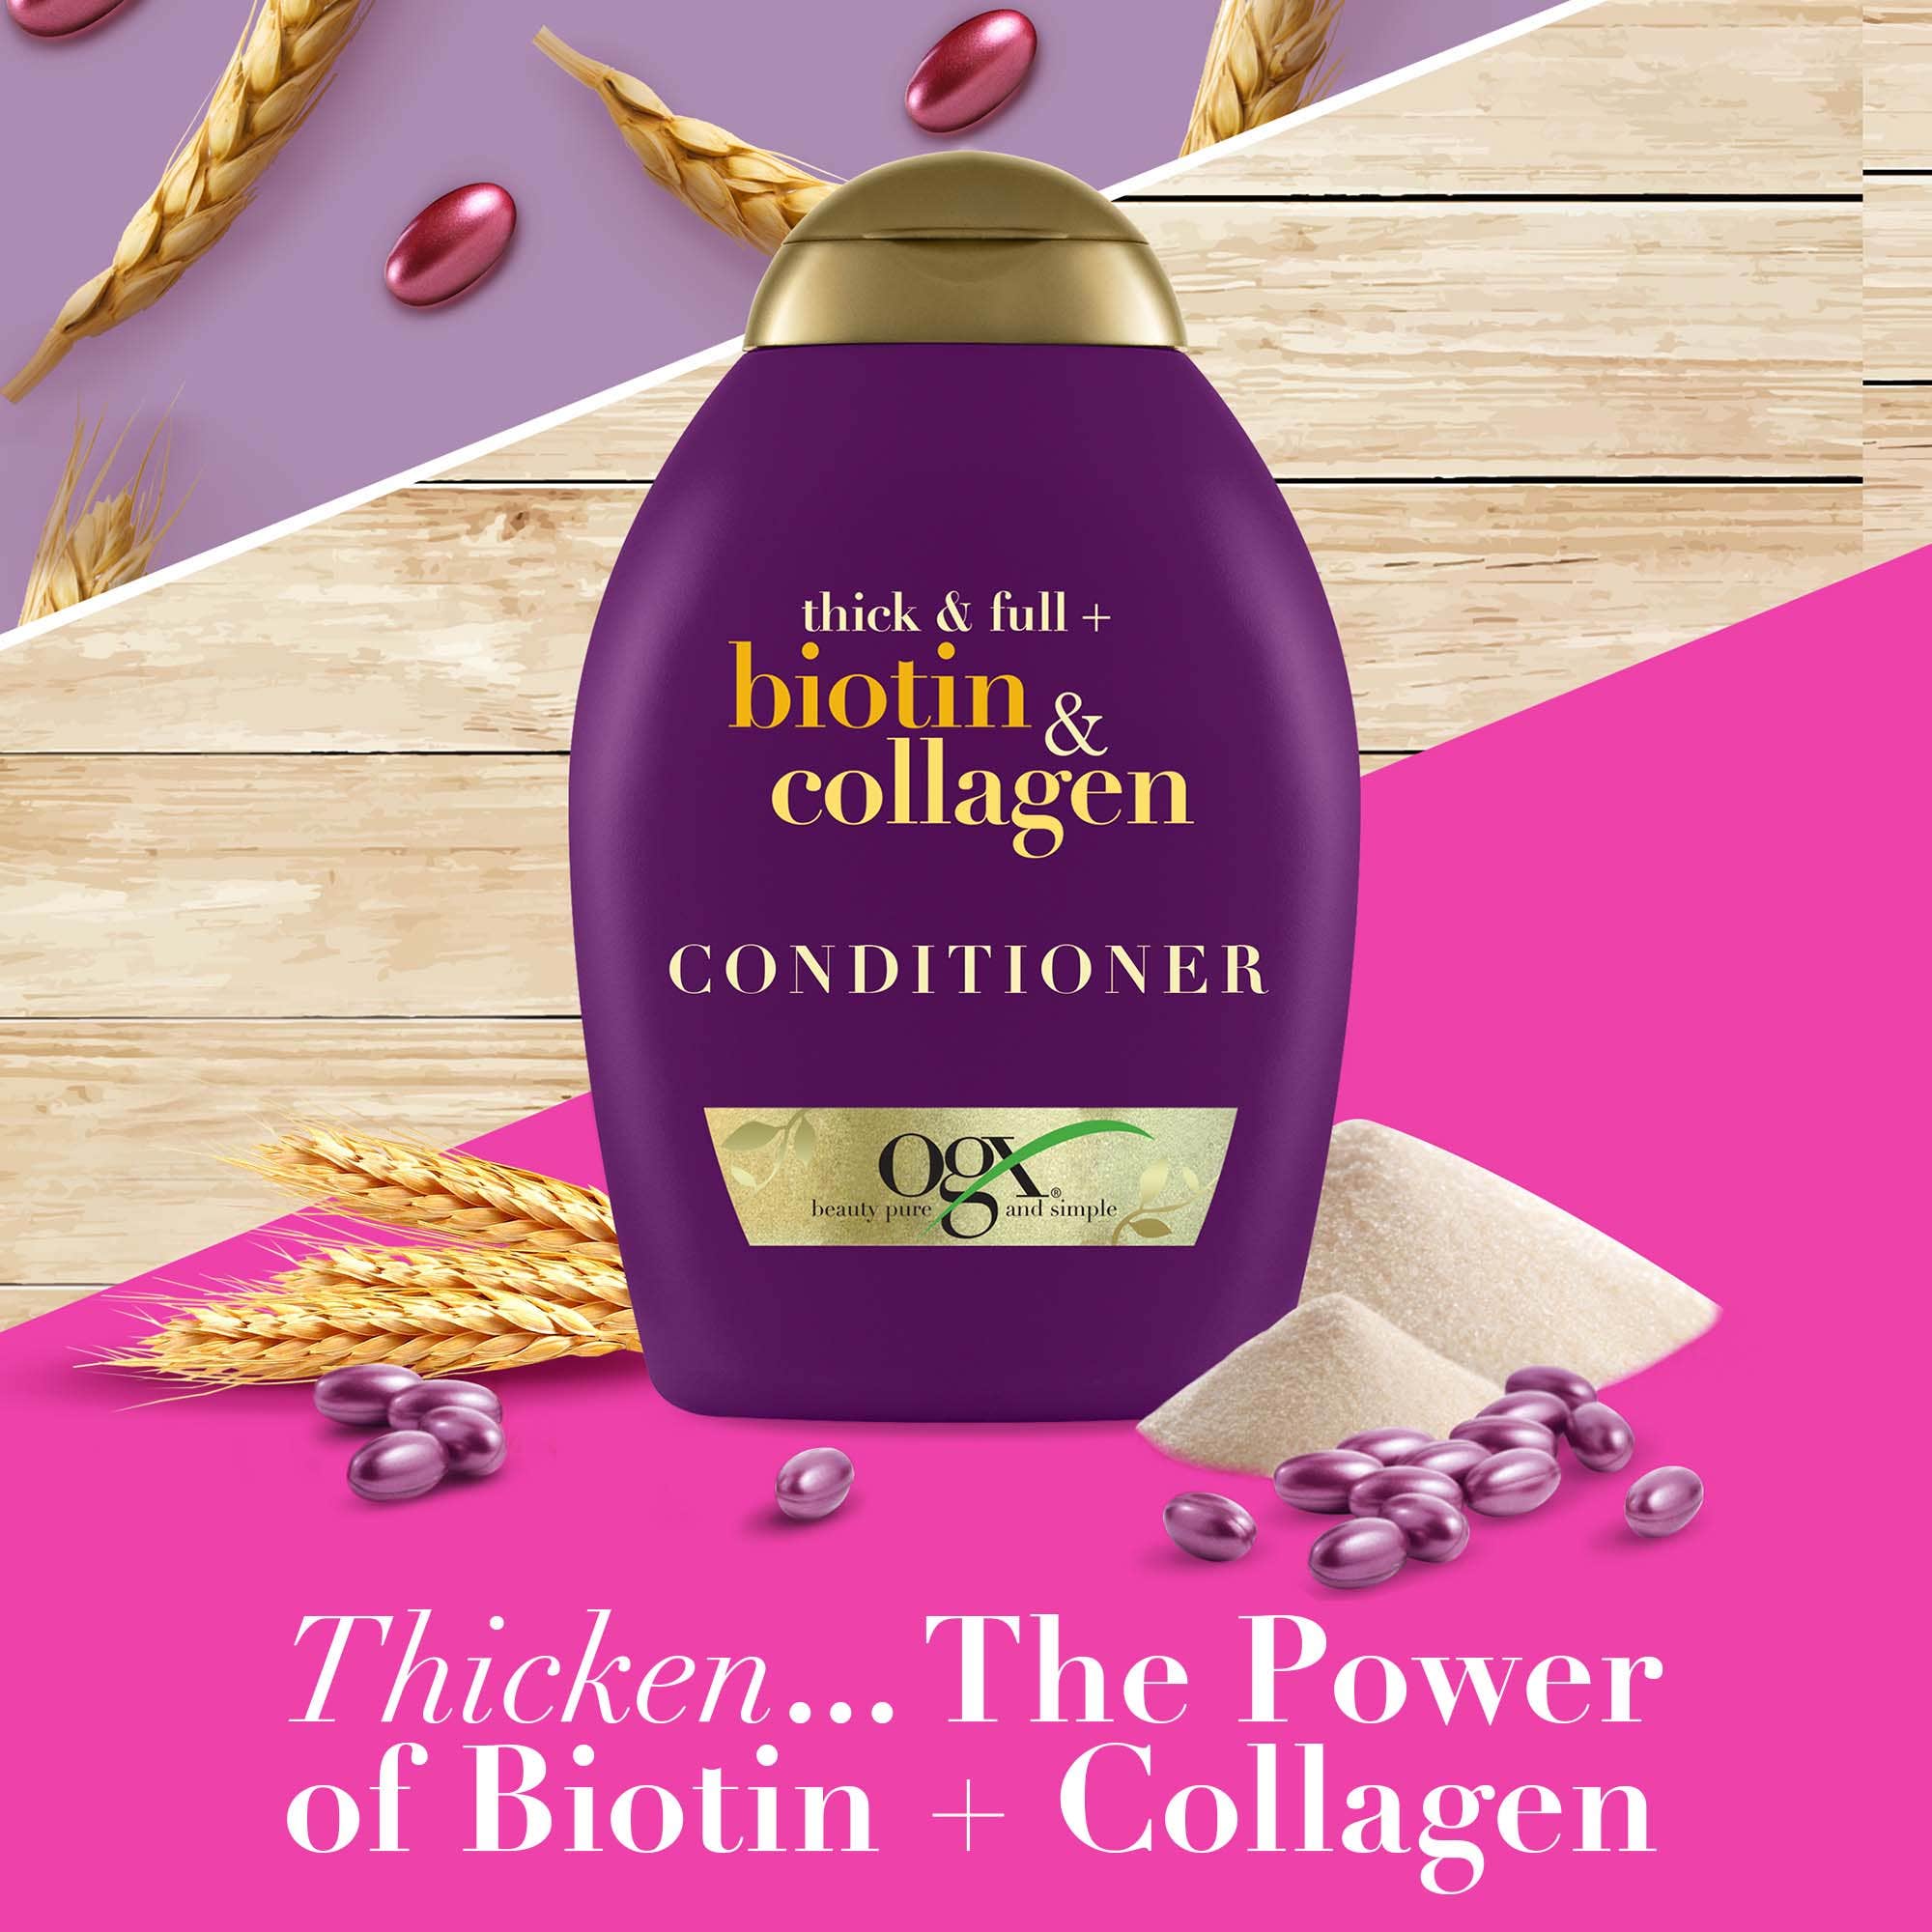 Biotin & Collagen Conditioner 385Ml